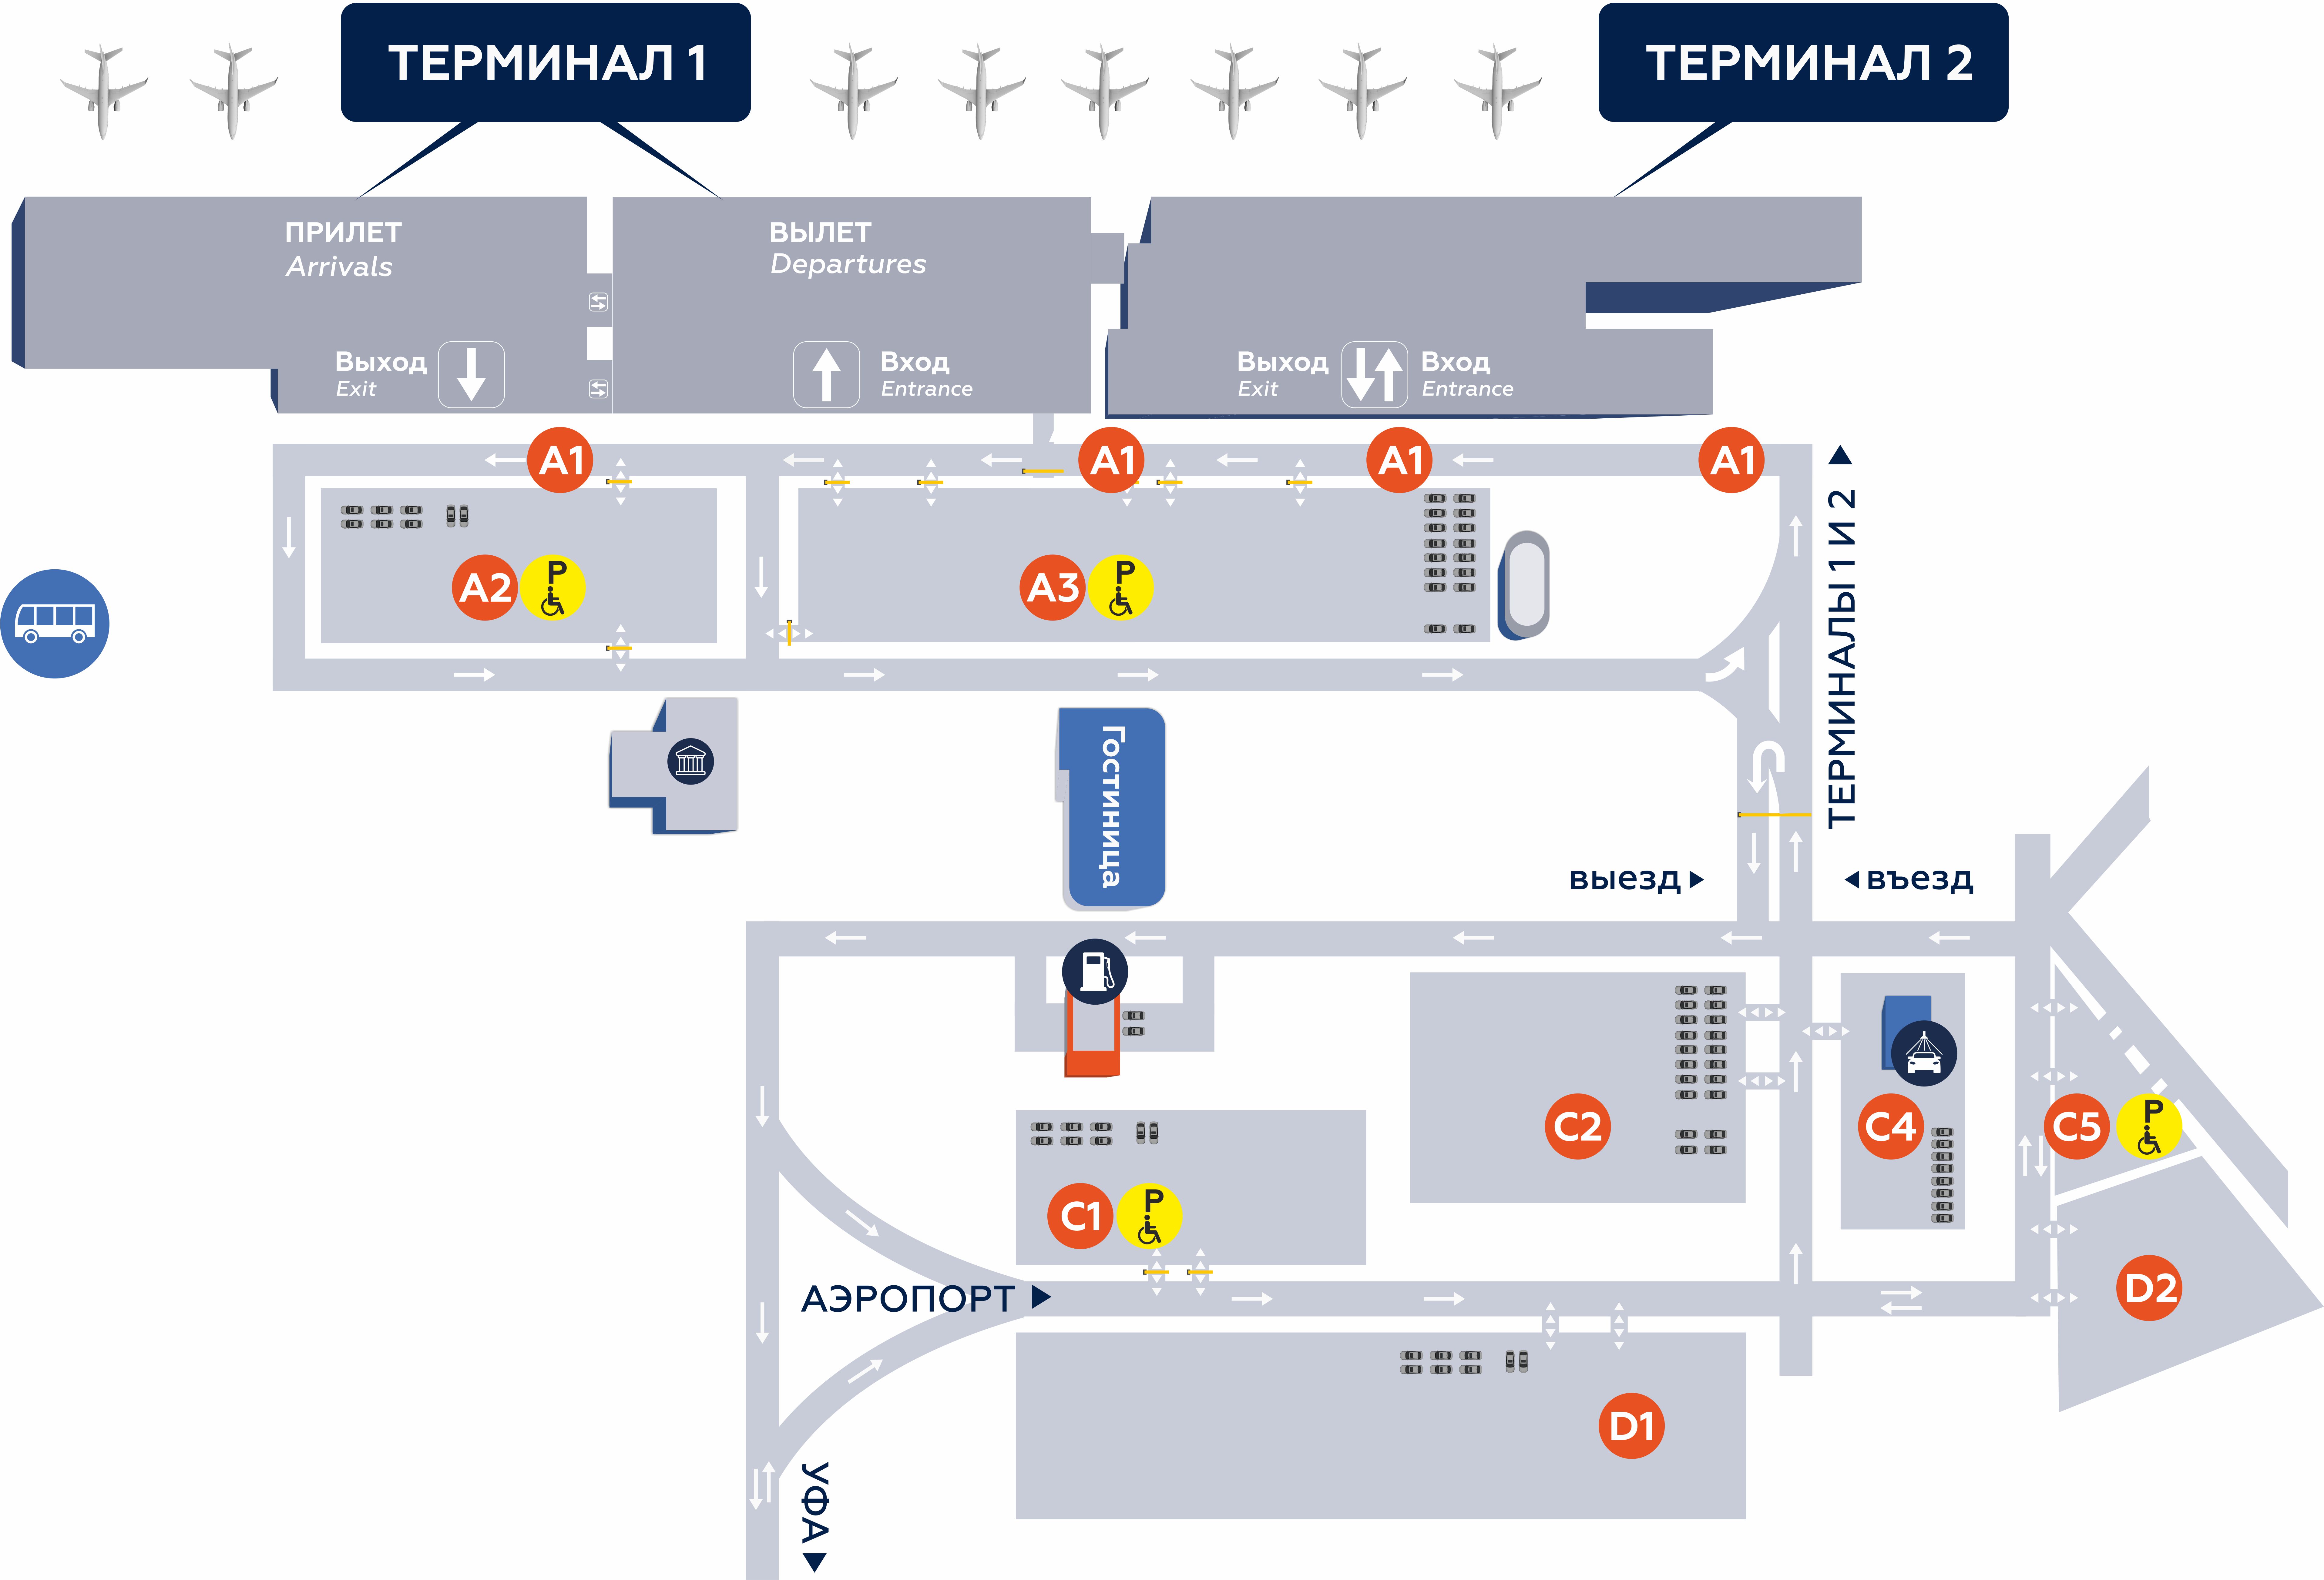 Планировка и карта парковочных зон в аэропорту Уфа